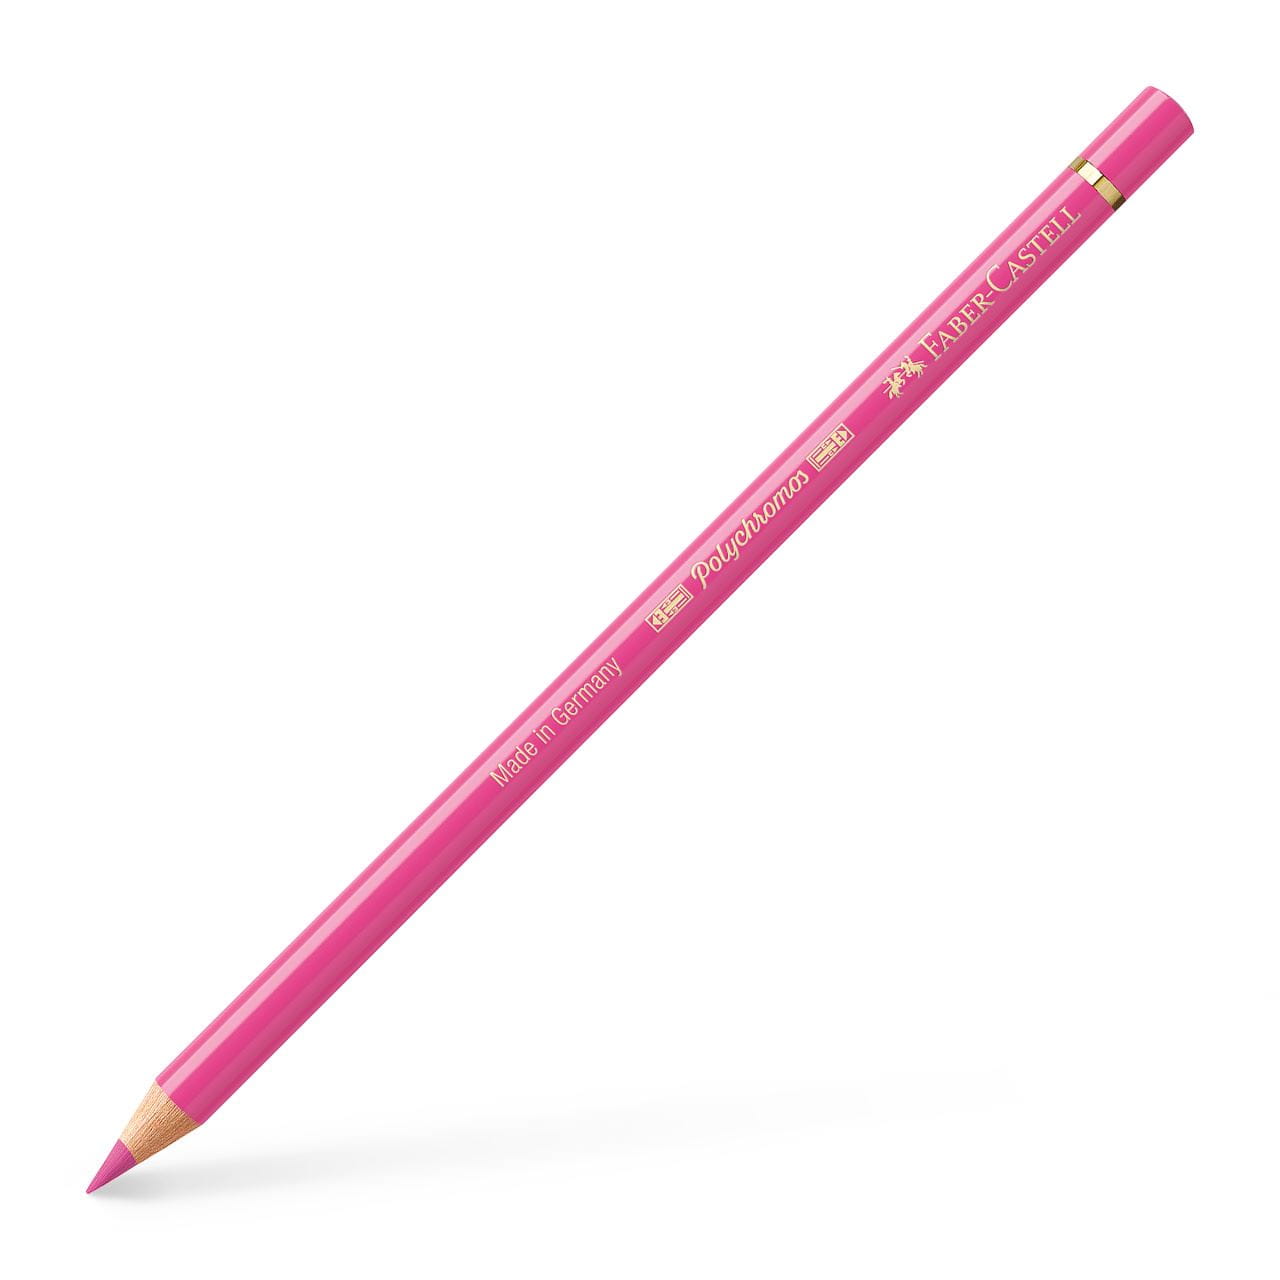 Faber-Castell - Crayon de couleur Polychromos 129 garance rose